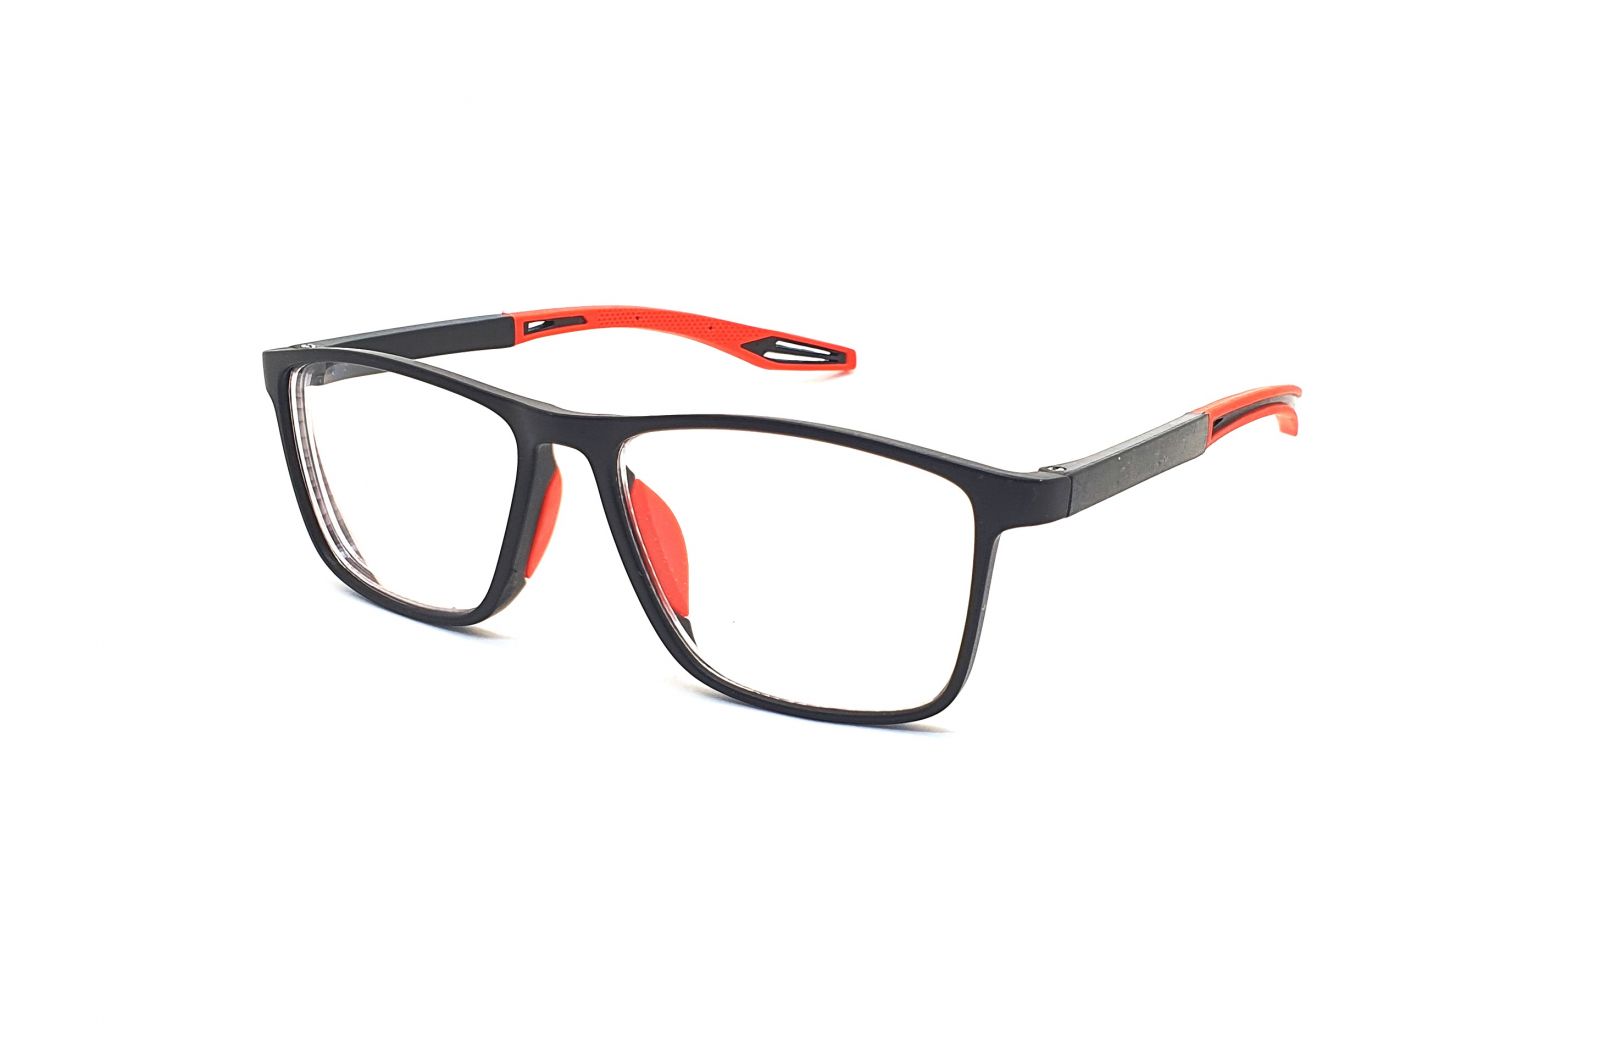 Samozabarvovací dioptrické brýle F04 / -4,00 black/red